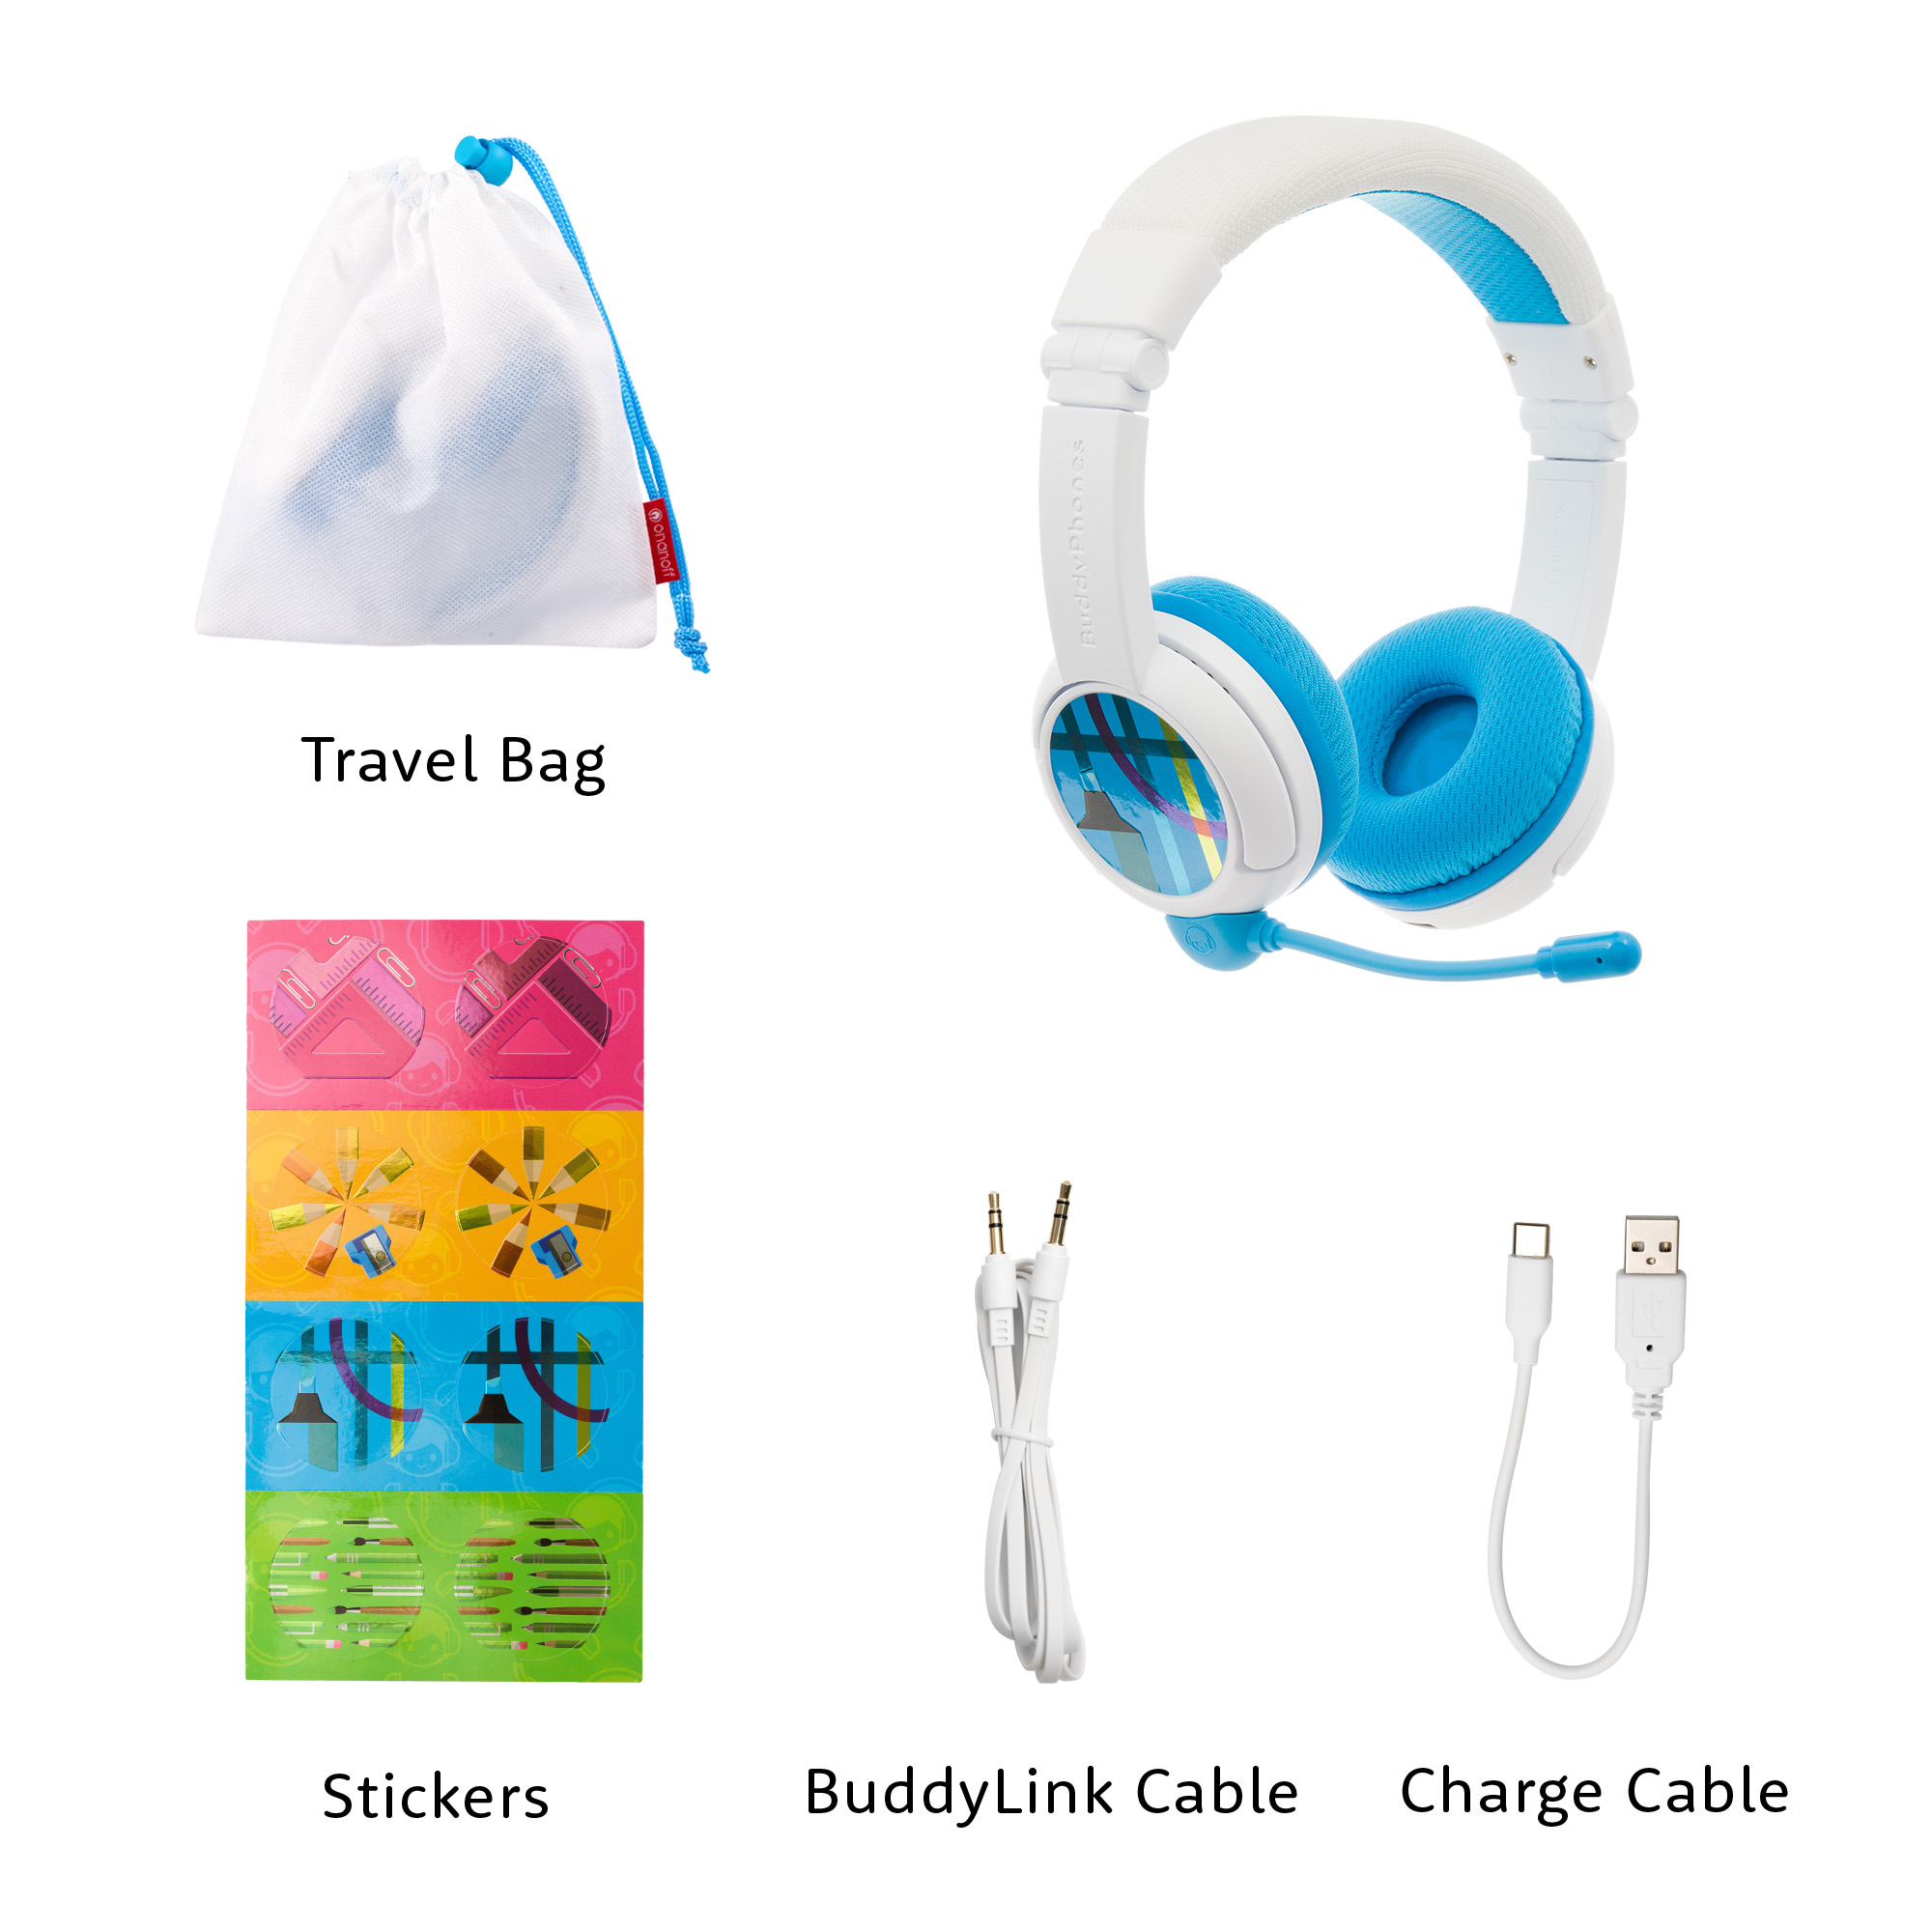 BUDDYPHONES School+ Wireless, Kinder Blau Bluetooth Kopfhörer On-ear